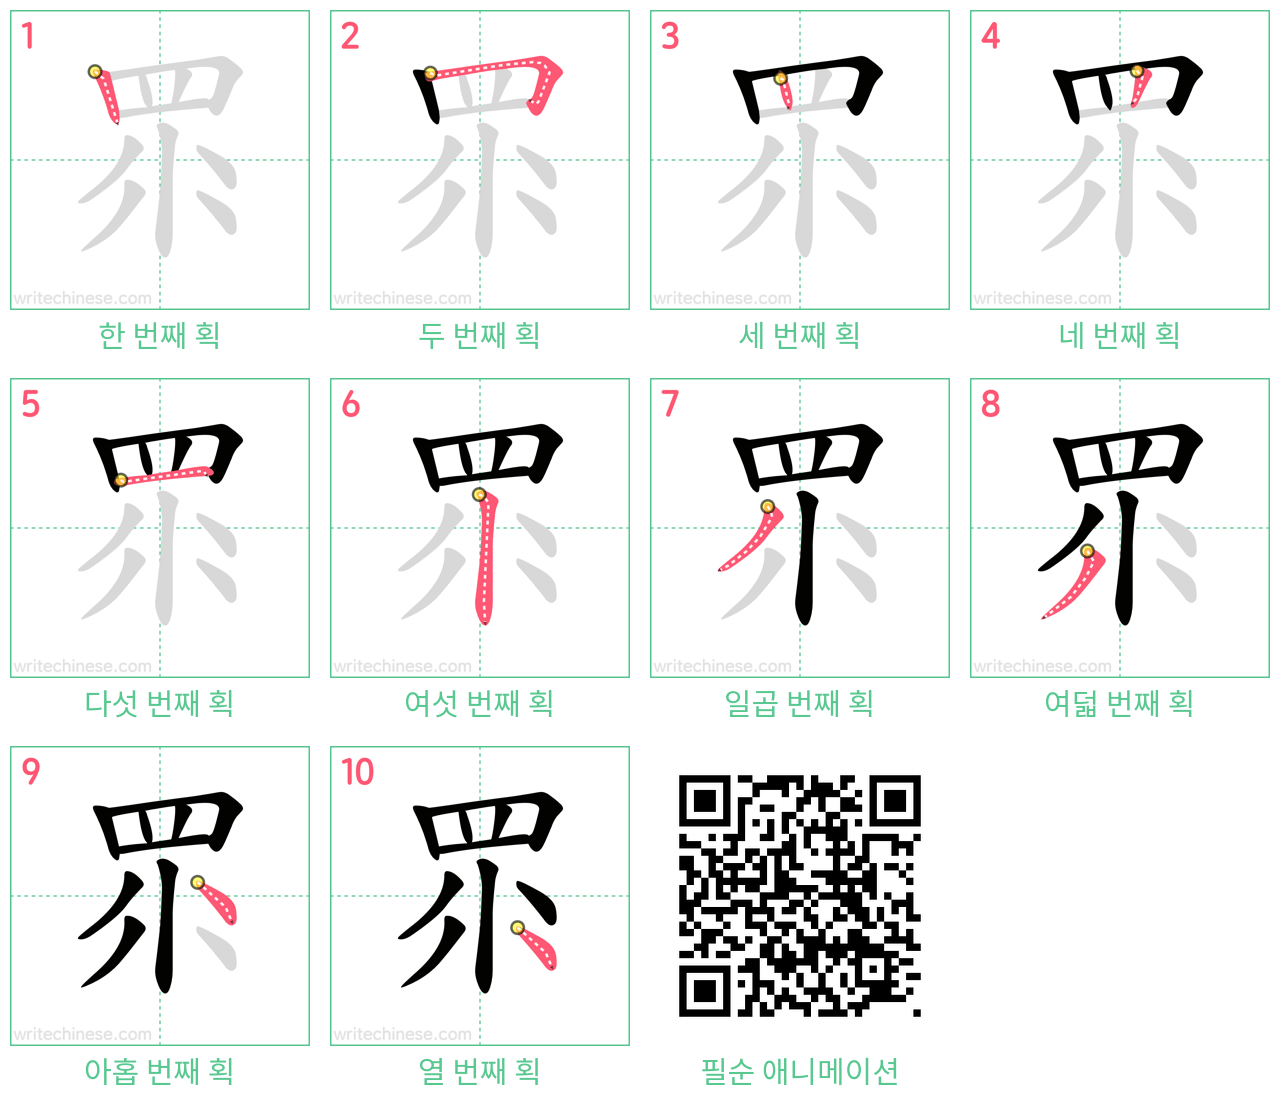 眔 step-by-step stroke order diagrams